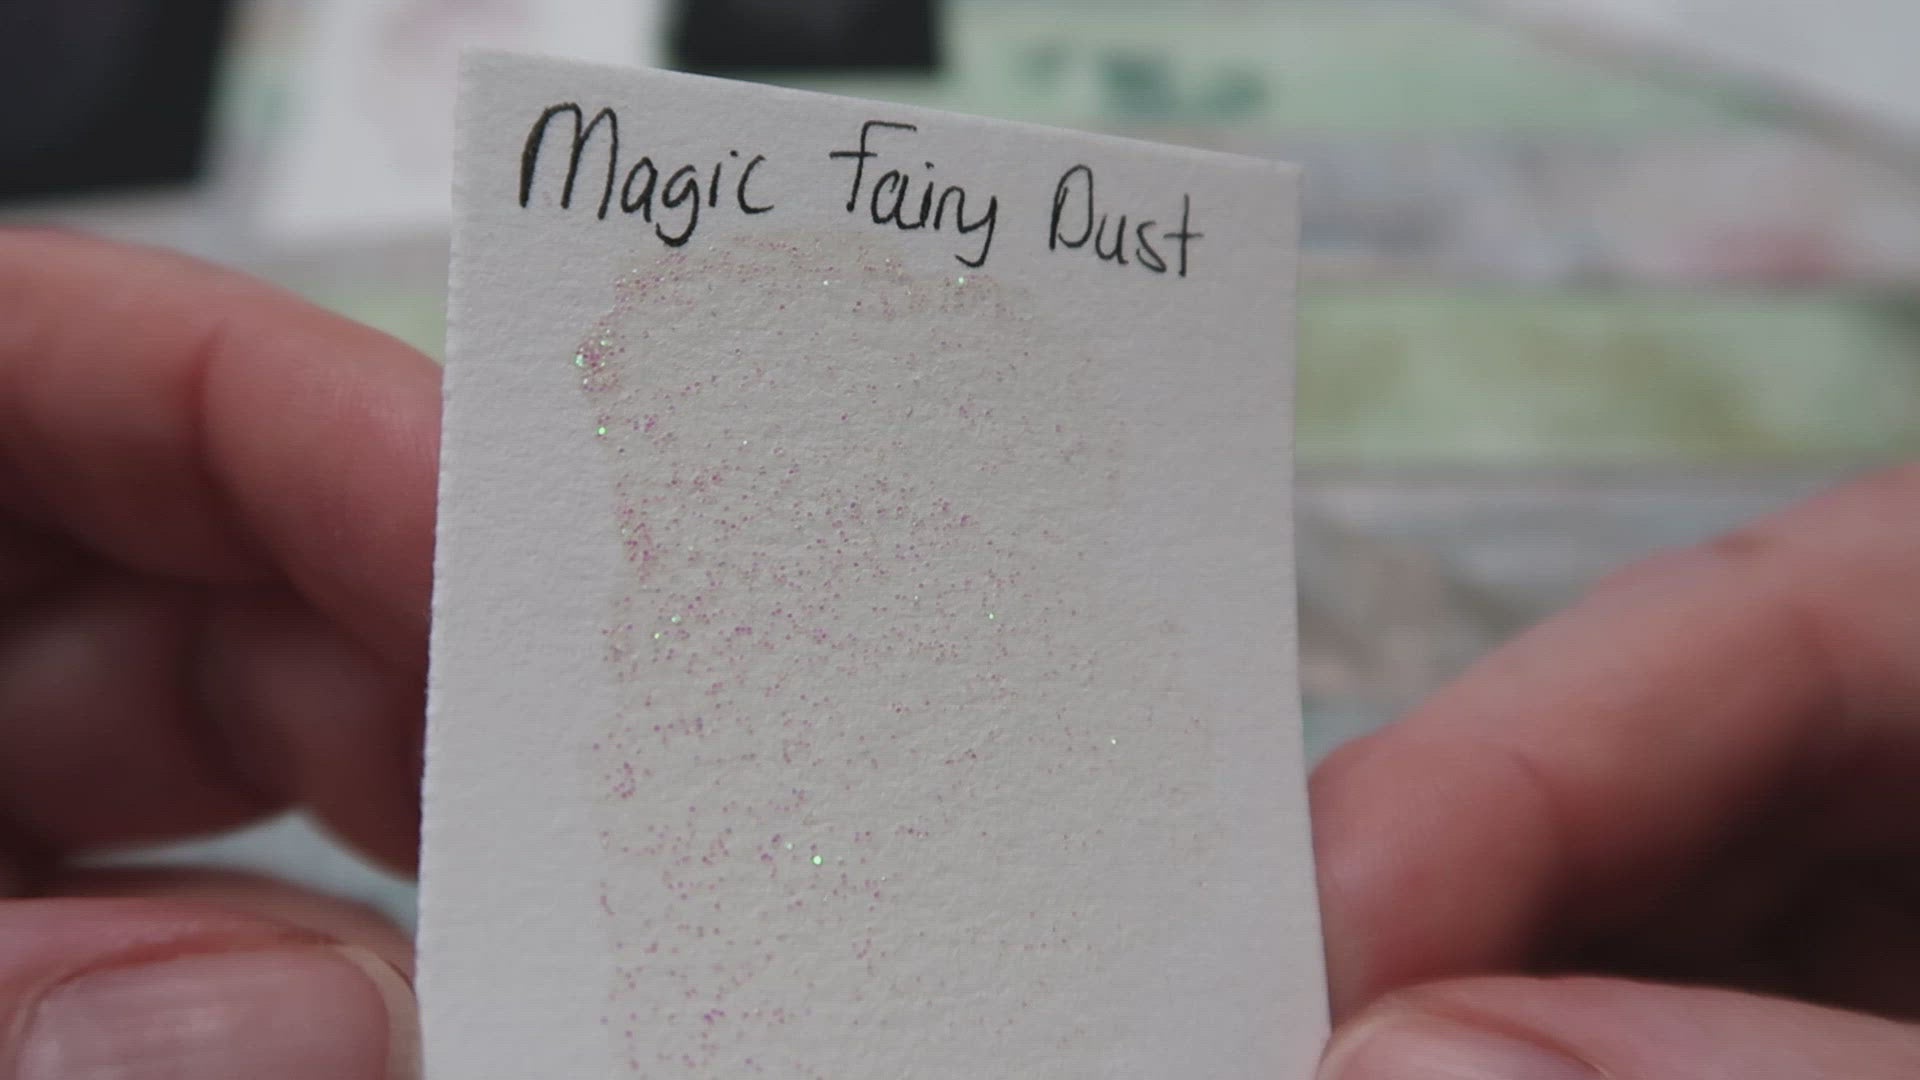 Magic Fairy Dust FULL PAN - Handmade Watercolor Paints (glitter